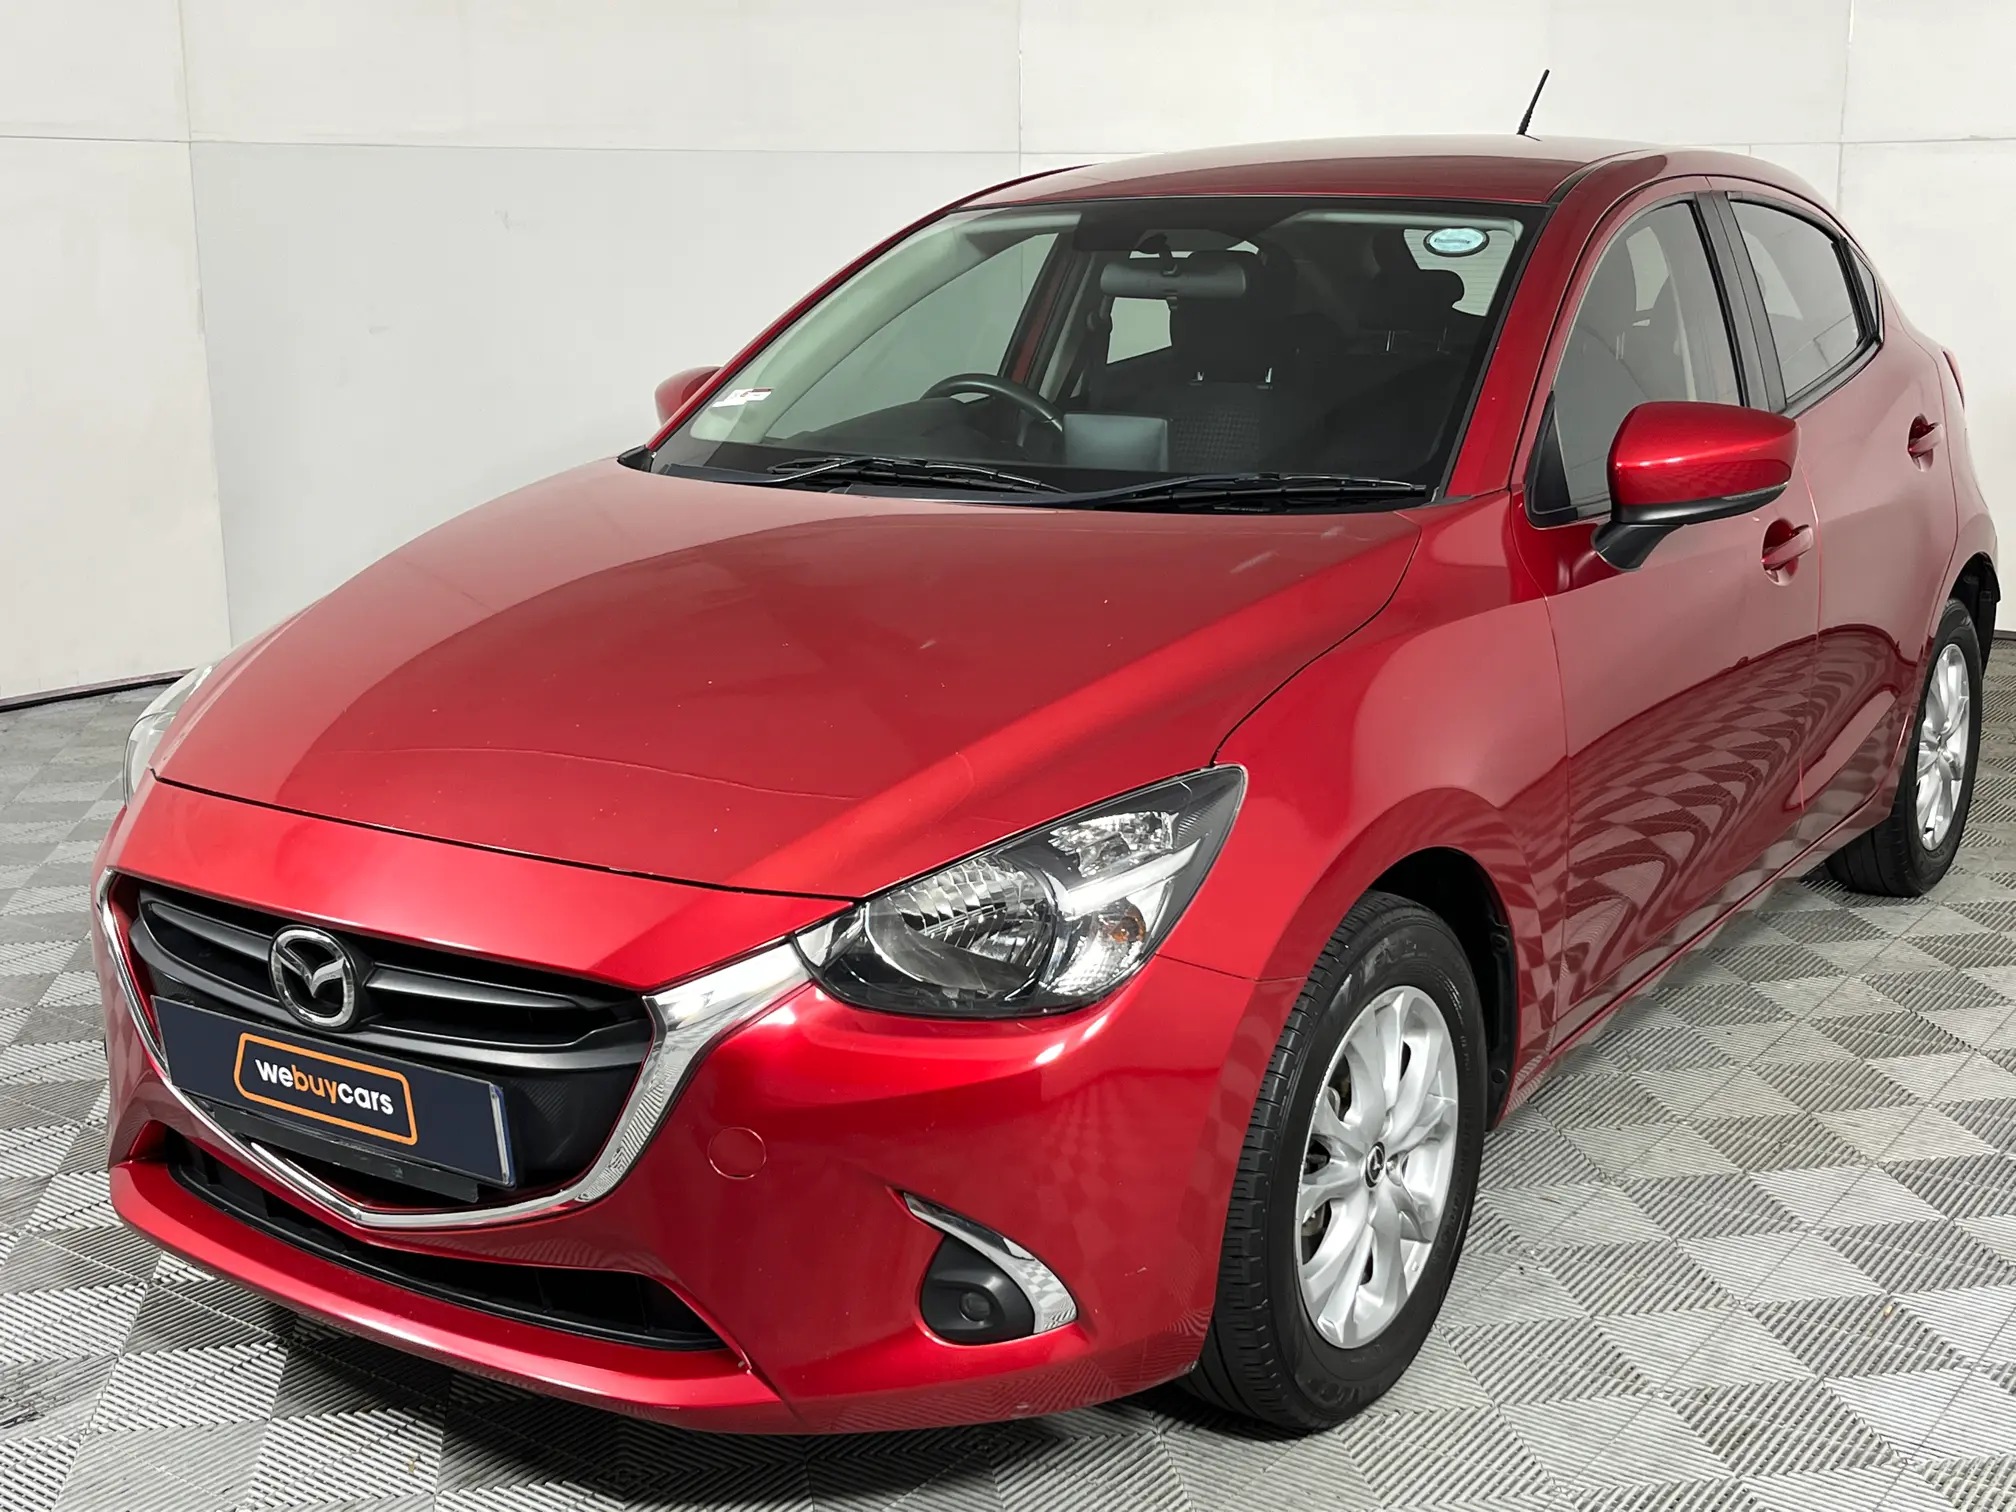 2018 Mazda Mazda 2 1.5 Active 5-Door